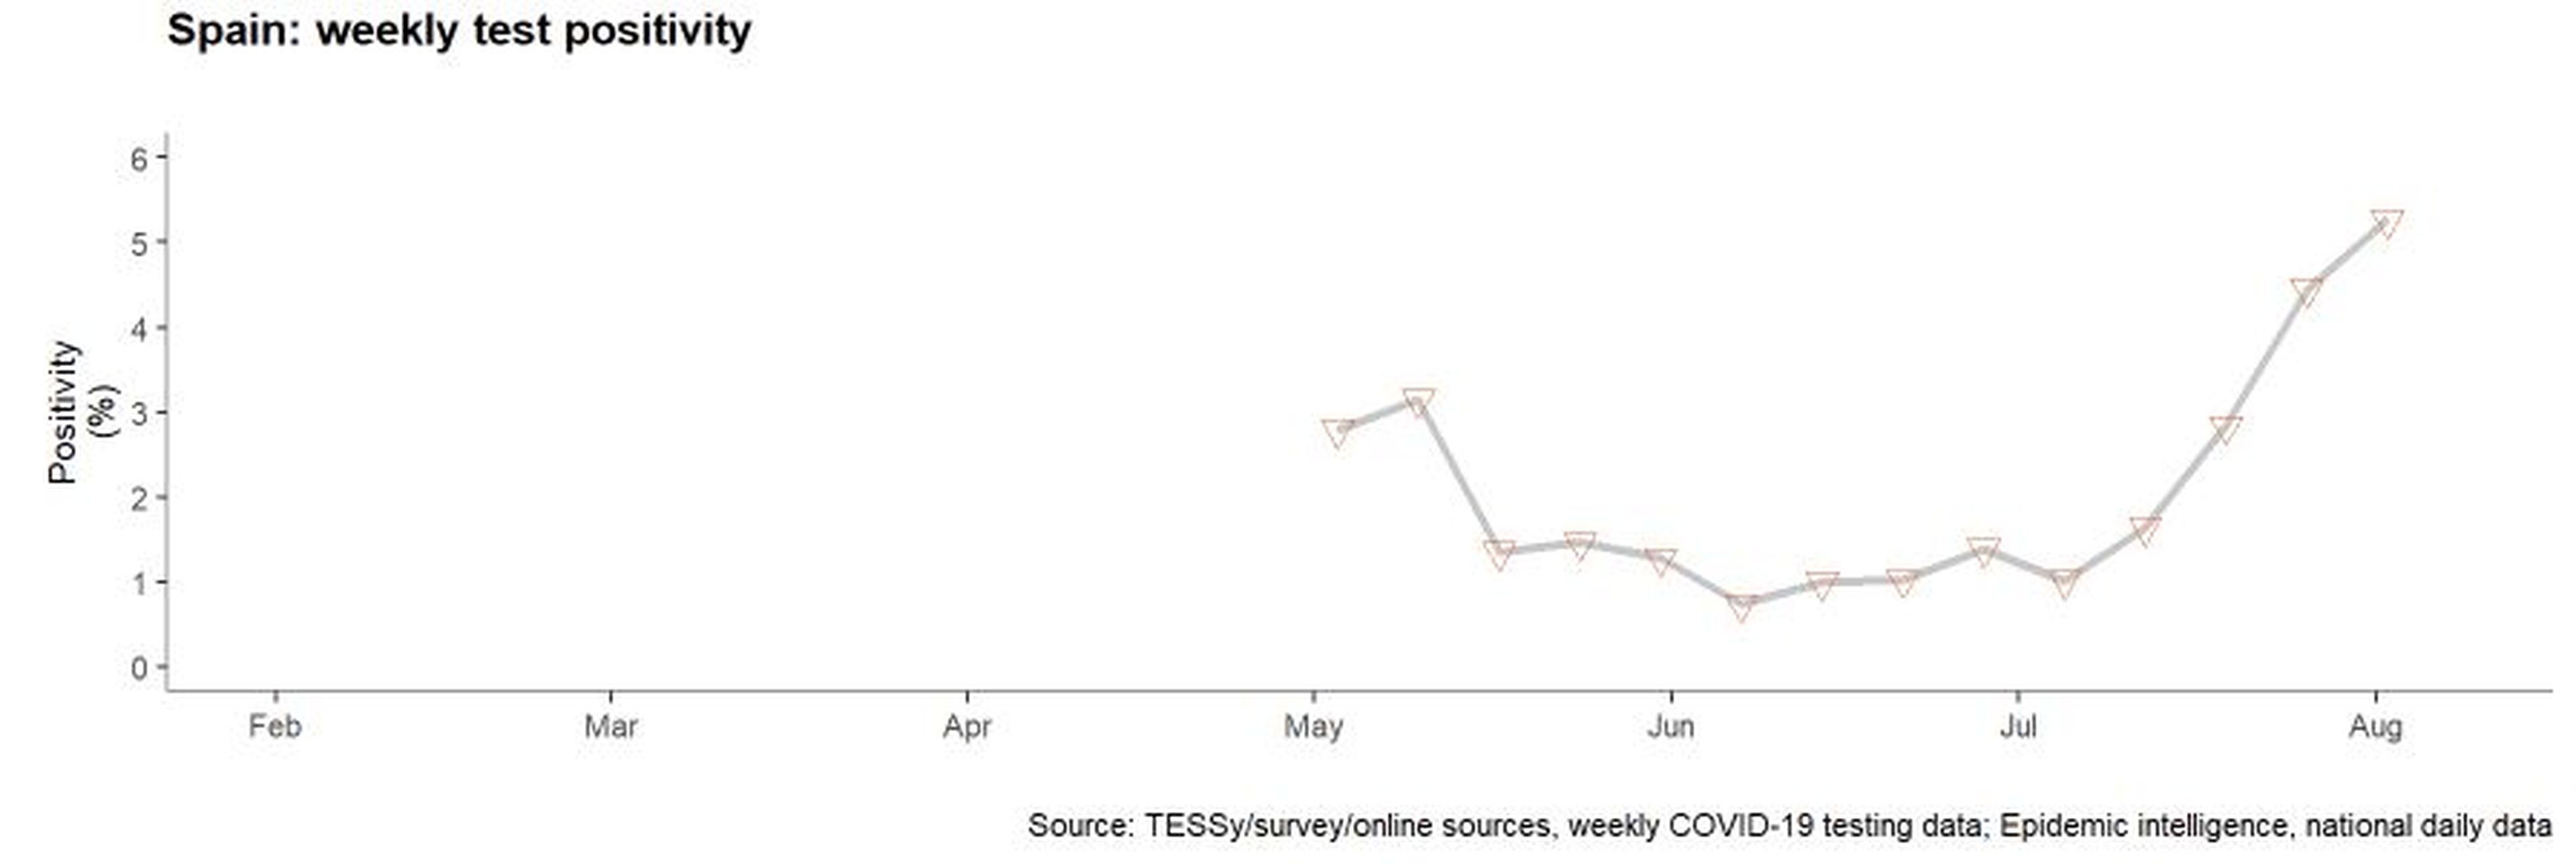 Porcentaje de positivos semanales sobre el total de tests de COVID-19, según el Centro Europeo de Prevención y Control de Enfermedades (ECDC)